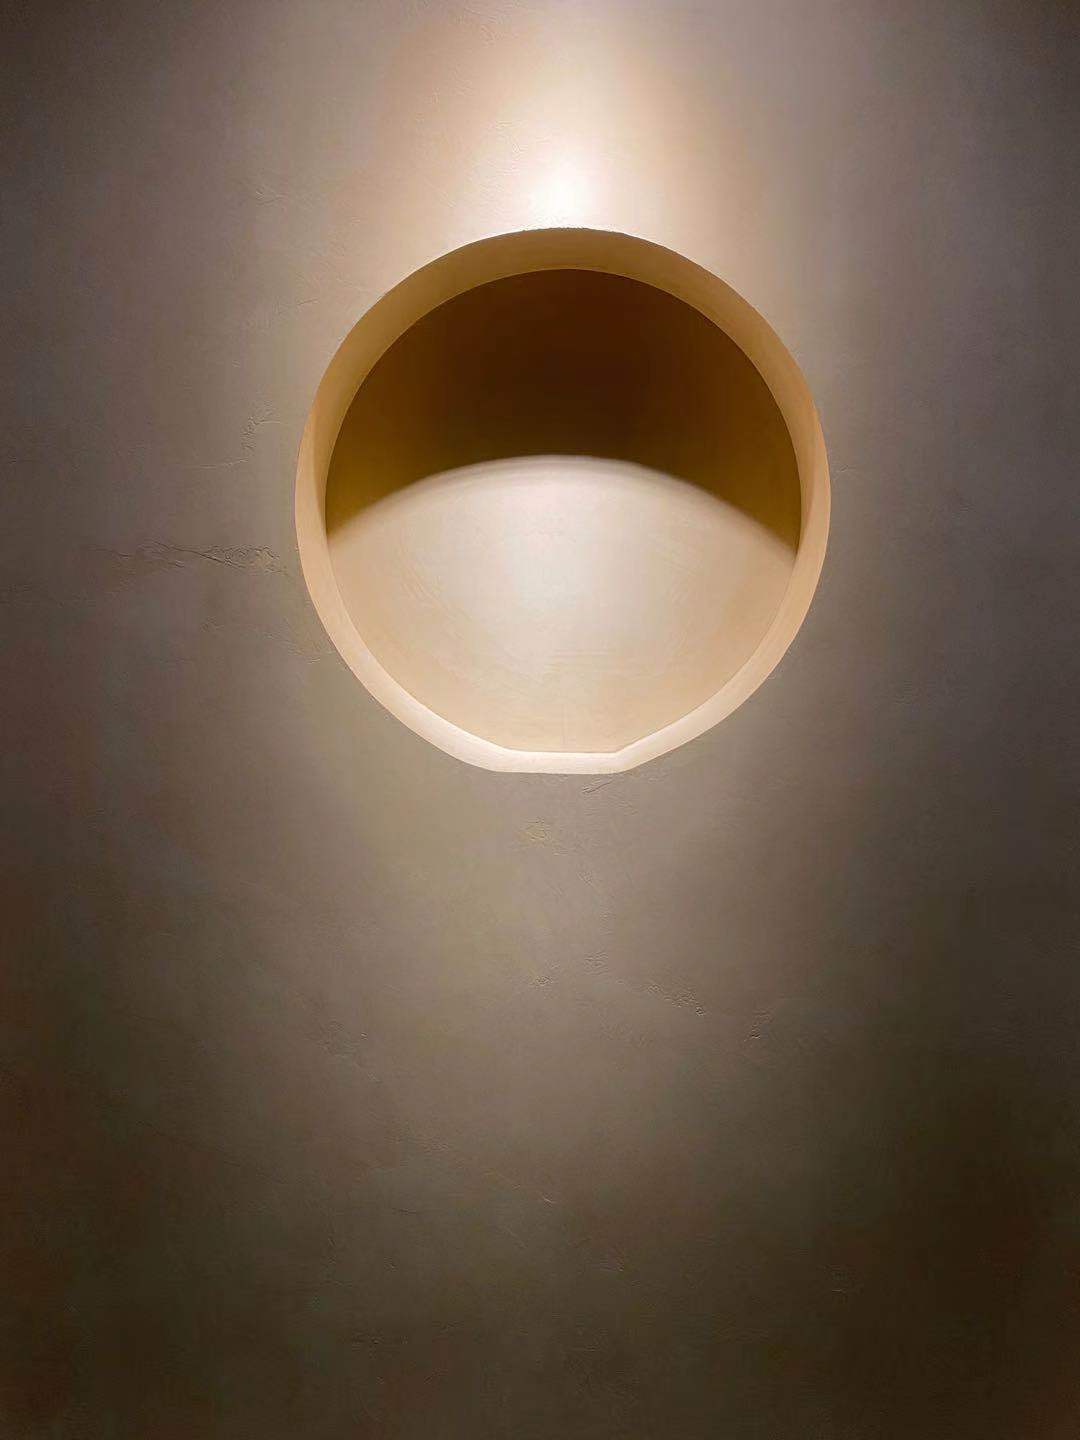 Microciment pe peretele unei case în stil minimalist, cu o iluminare care îmbunătățește acoperirea